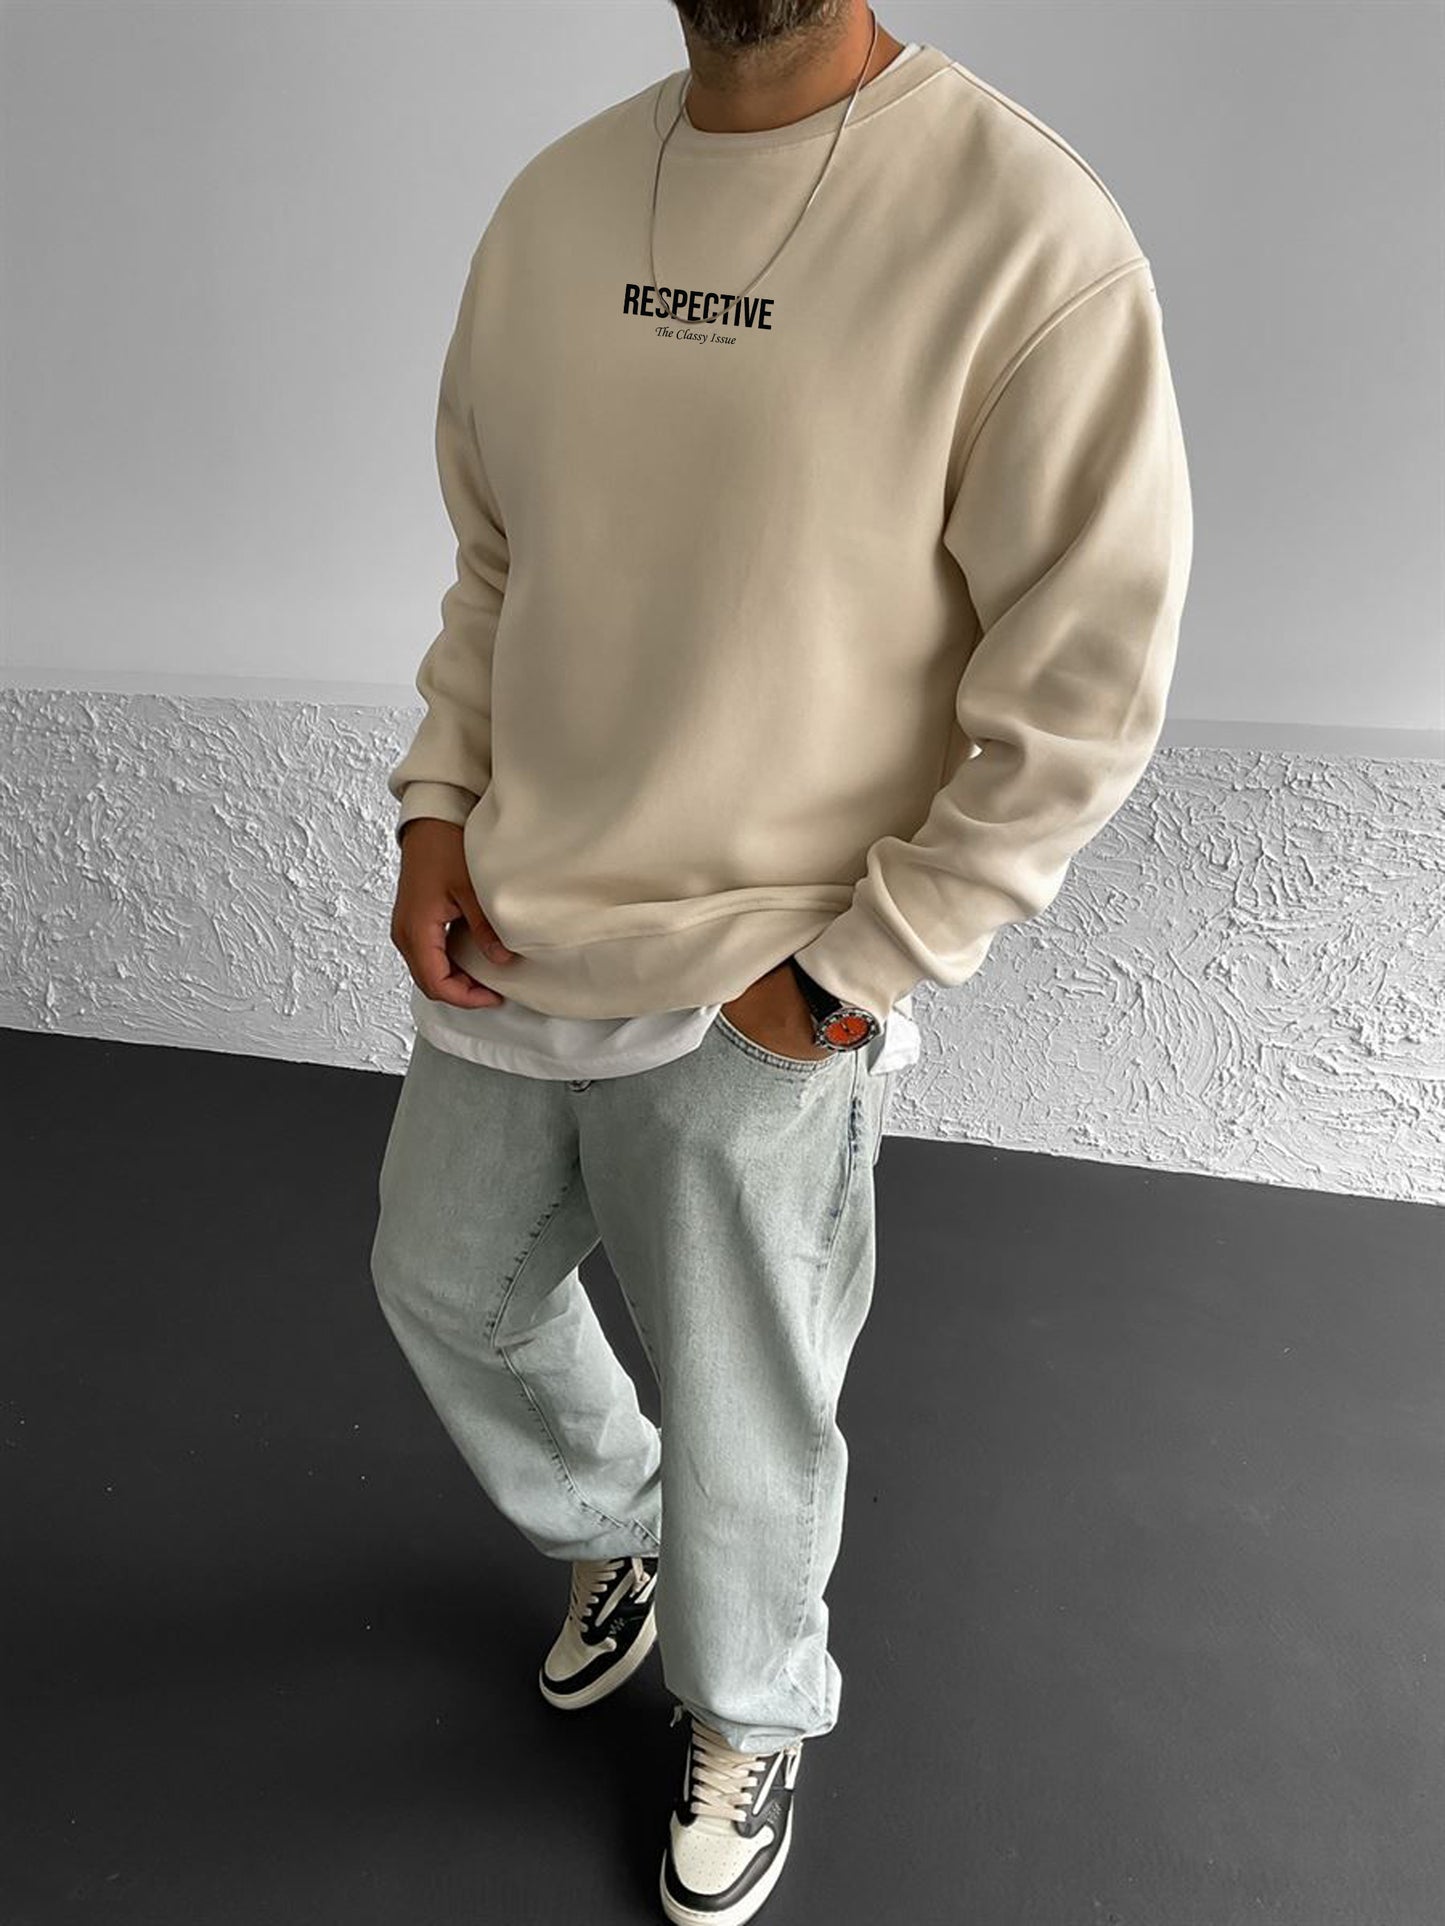 Beige "Respective " Printed Oversize Sweatshirt